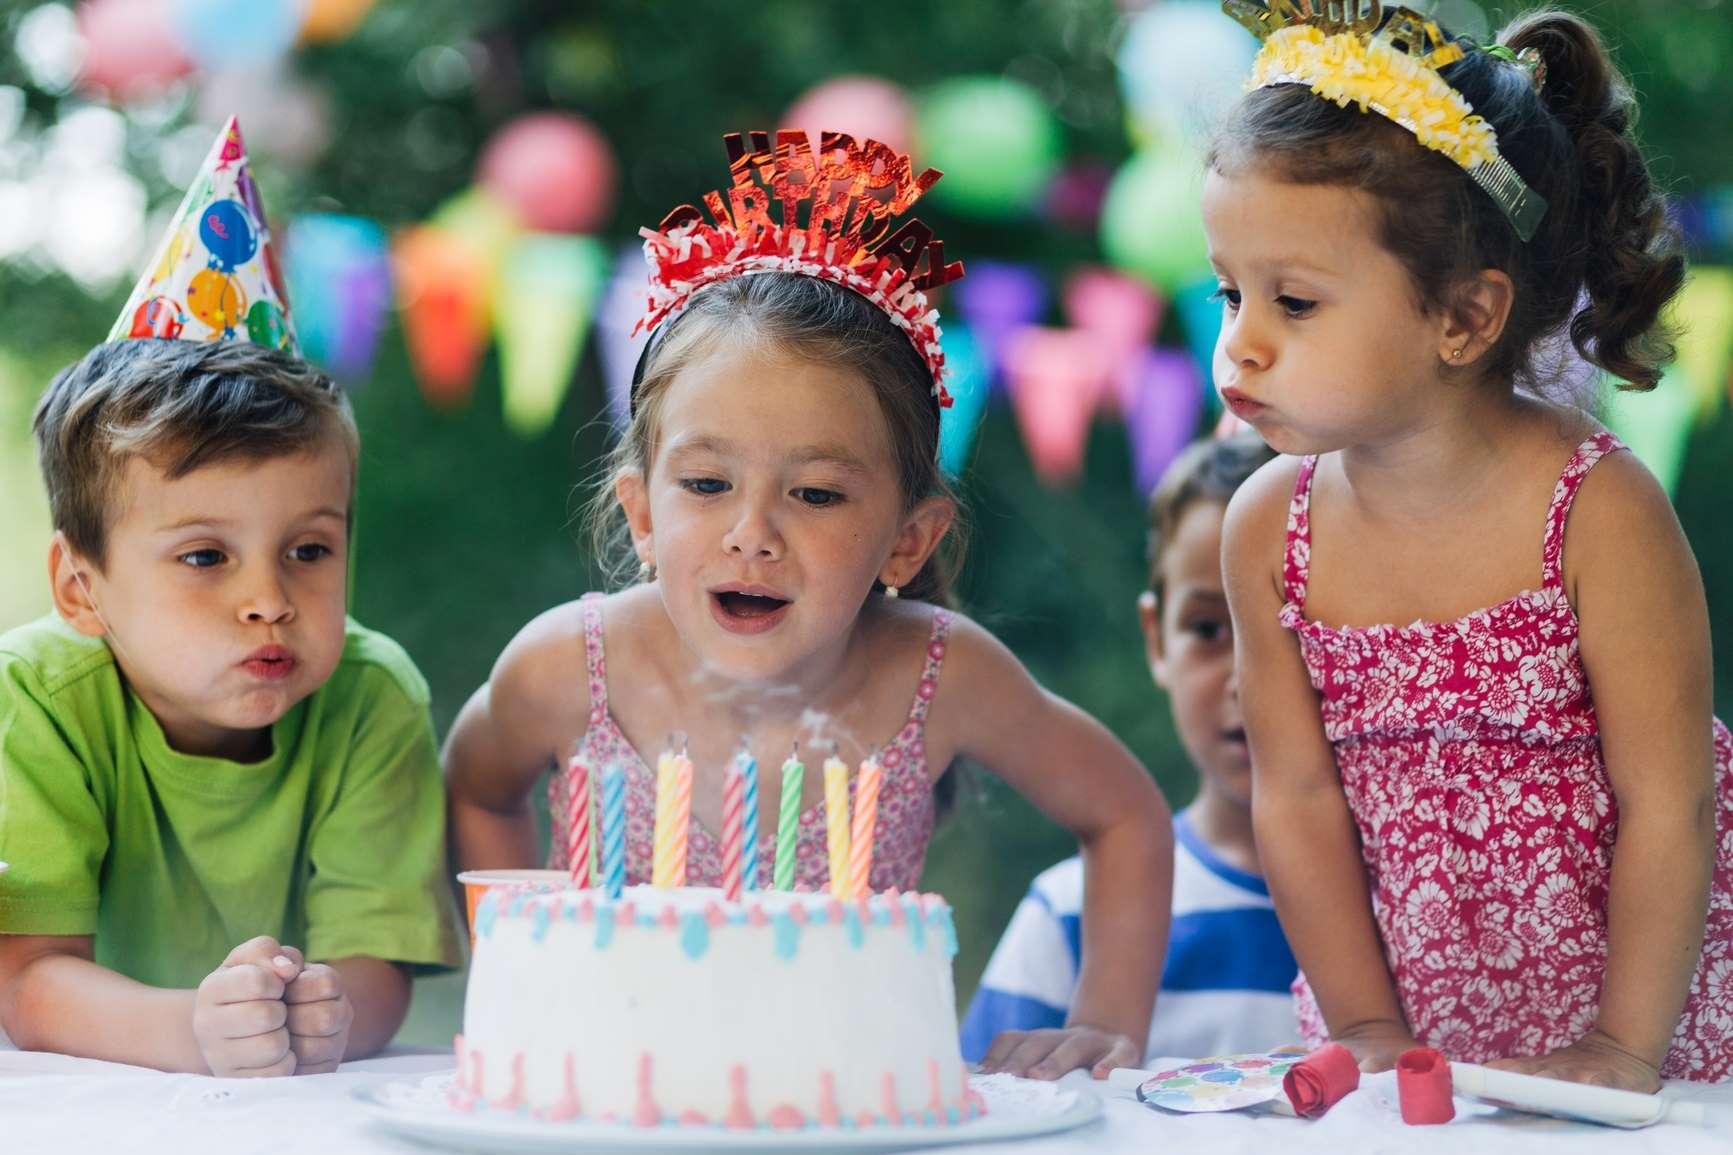 Vorsorgeuntersuchung Kinder: Mädchen bläst Geburtstagskerzen aus.hen lächelt zufrieden auf grüner Wiese.